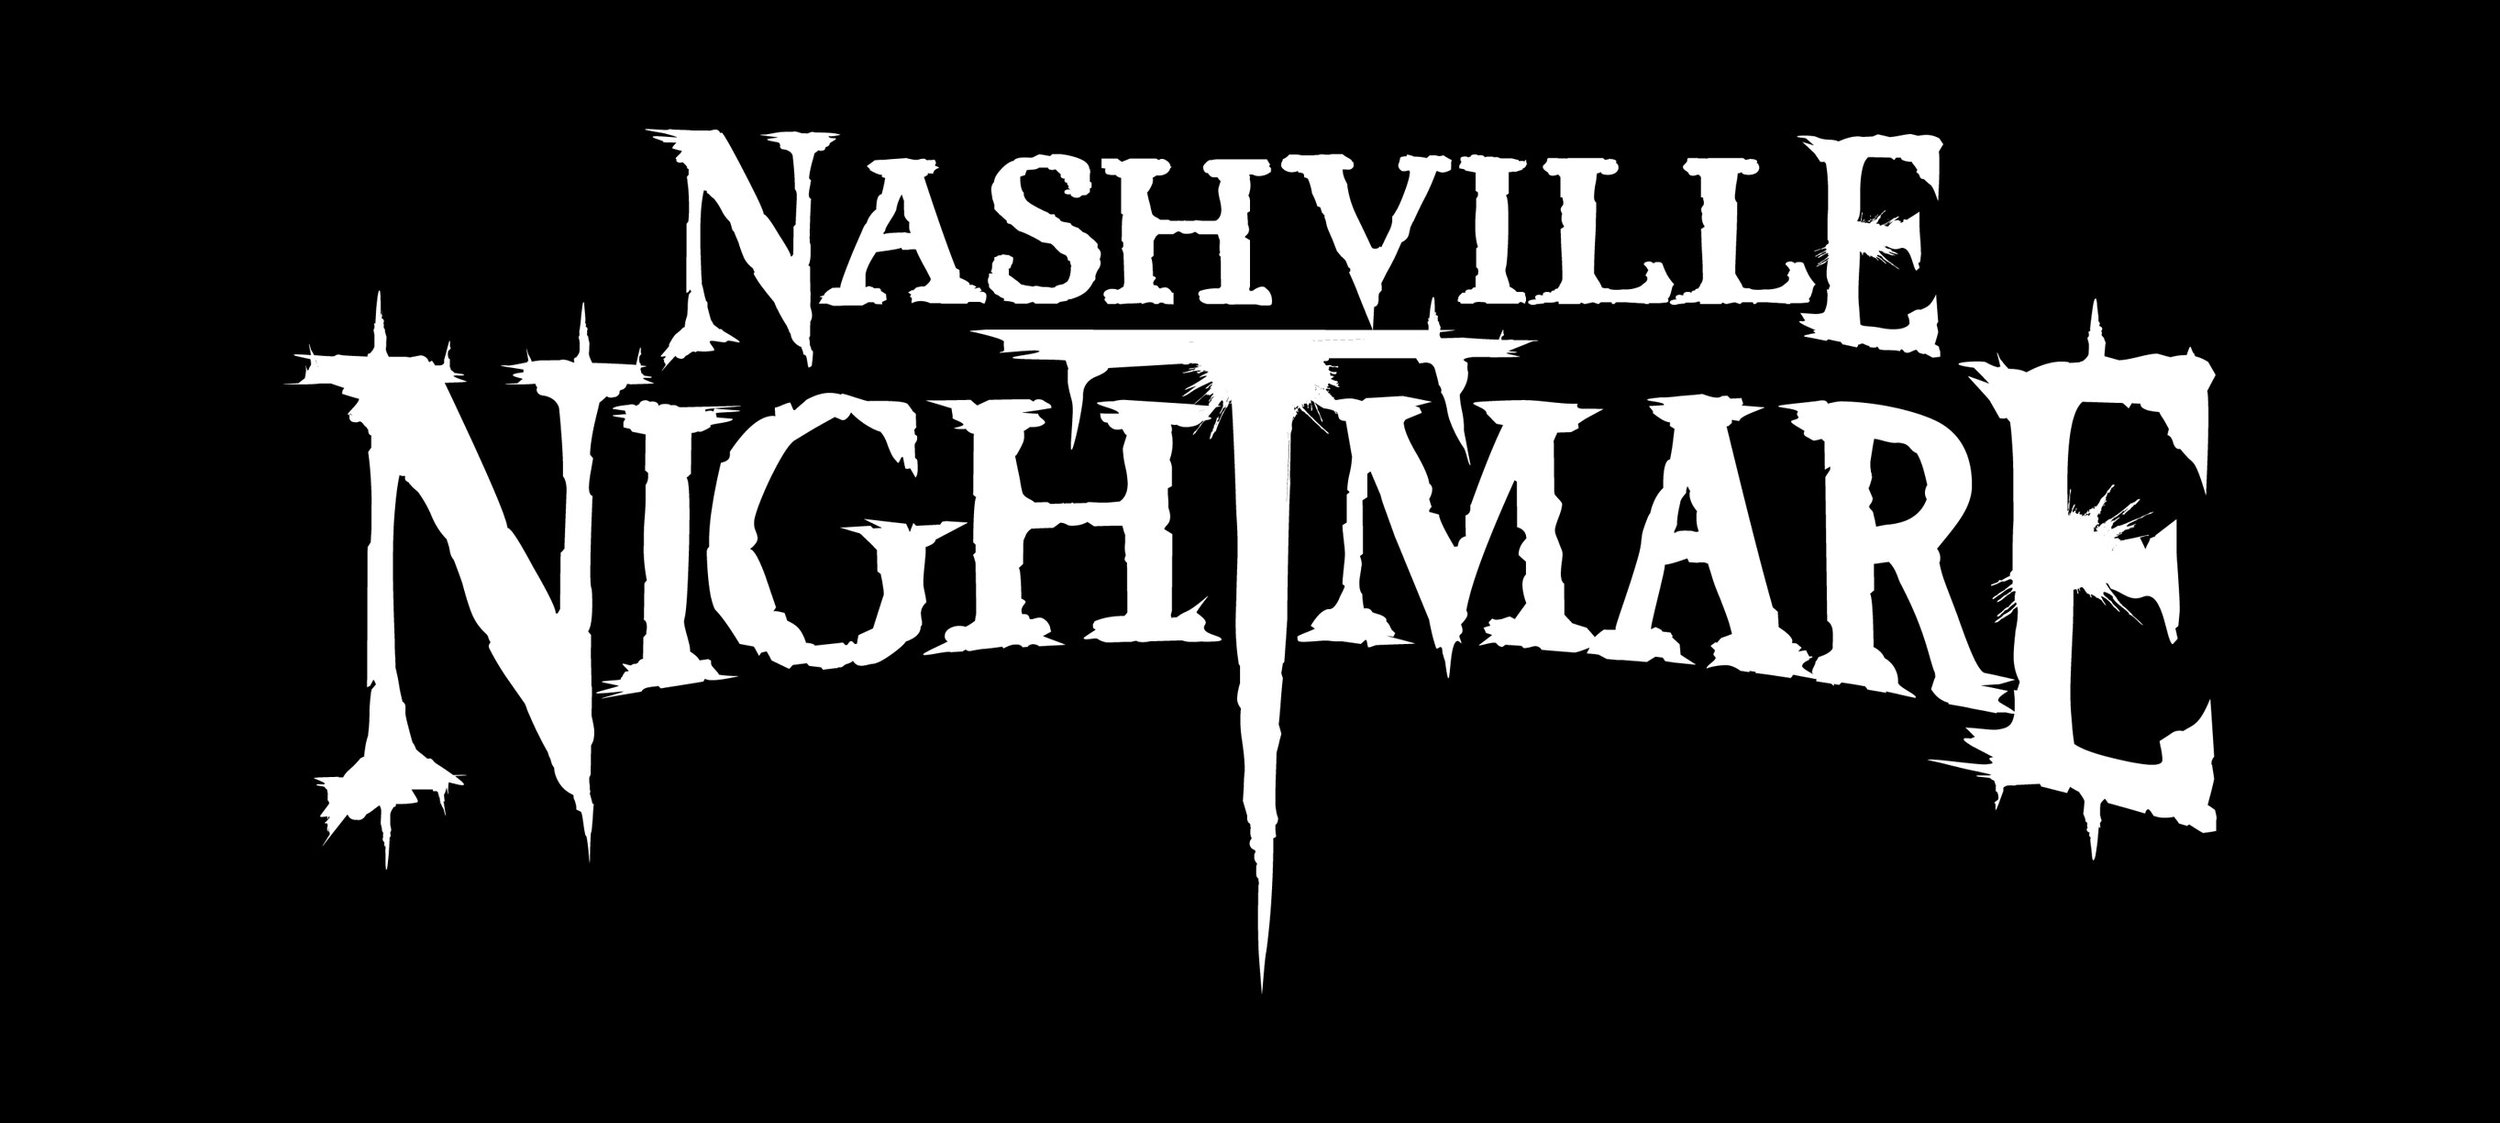 nashville_nightmare_logo.jpg